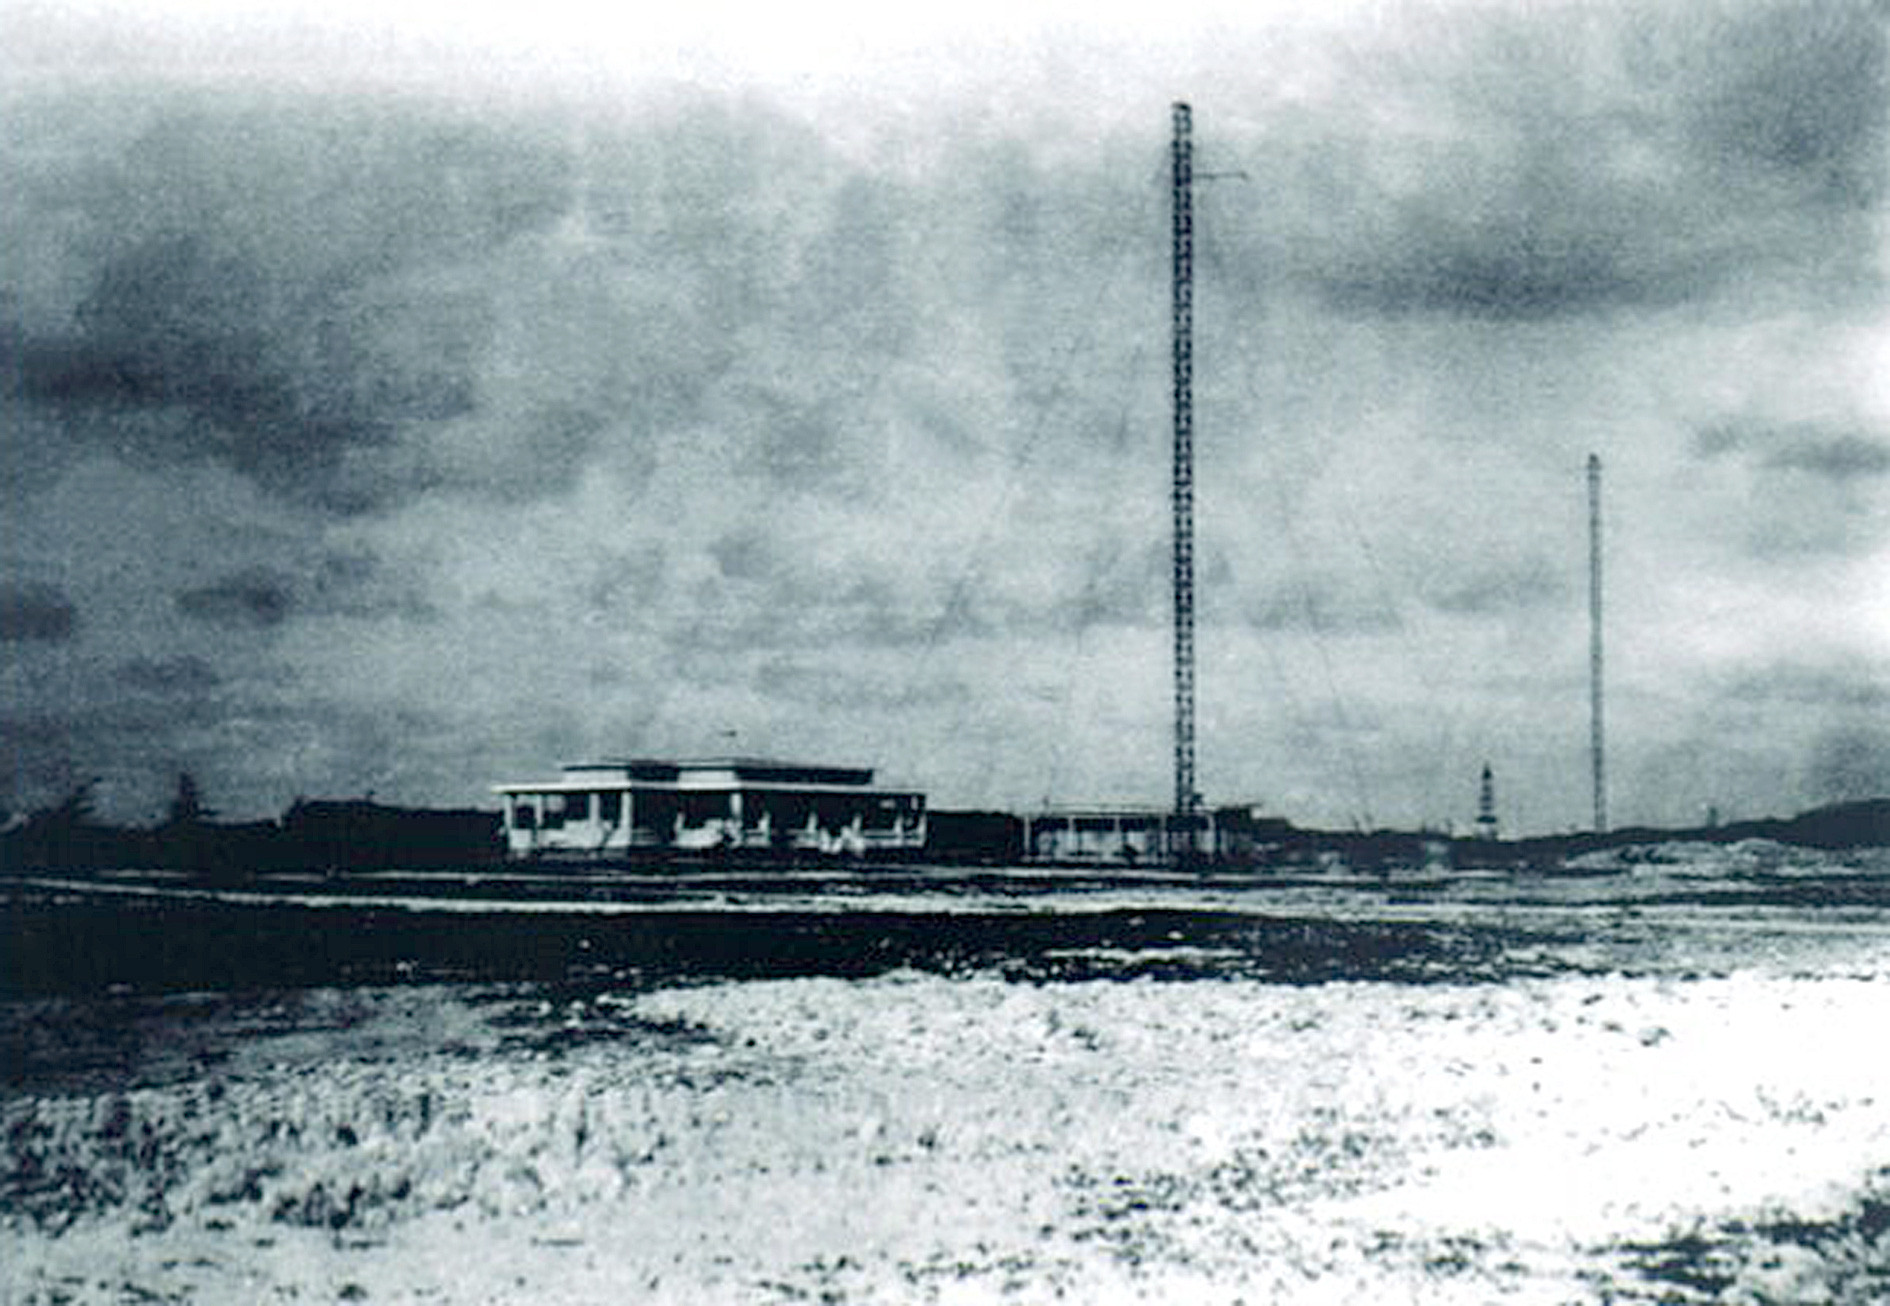 Trạm thu phát sóng radio và trạm khí tượng do người Pháp xây dựng trên đảo Hoàng Sa (ảnh chụp năm 1940) - Ảnh tư liệu